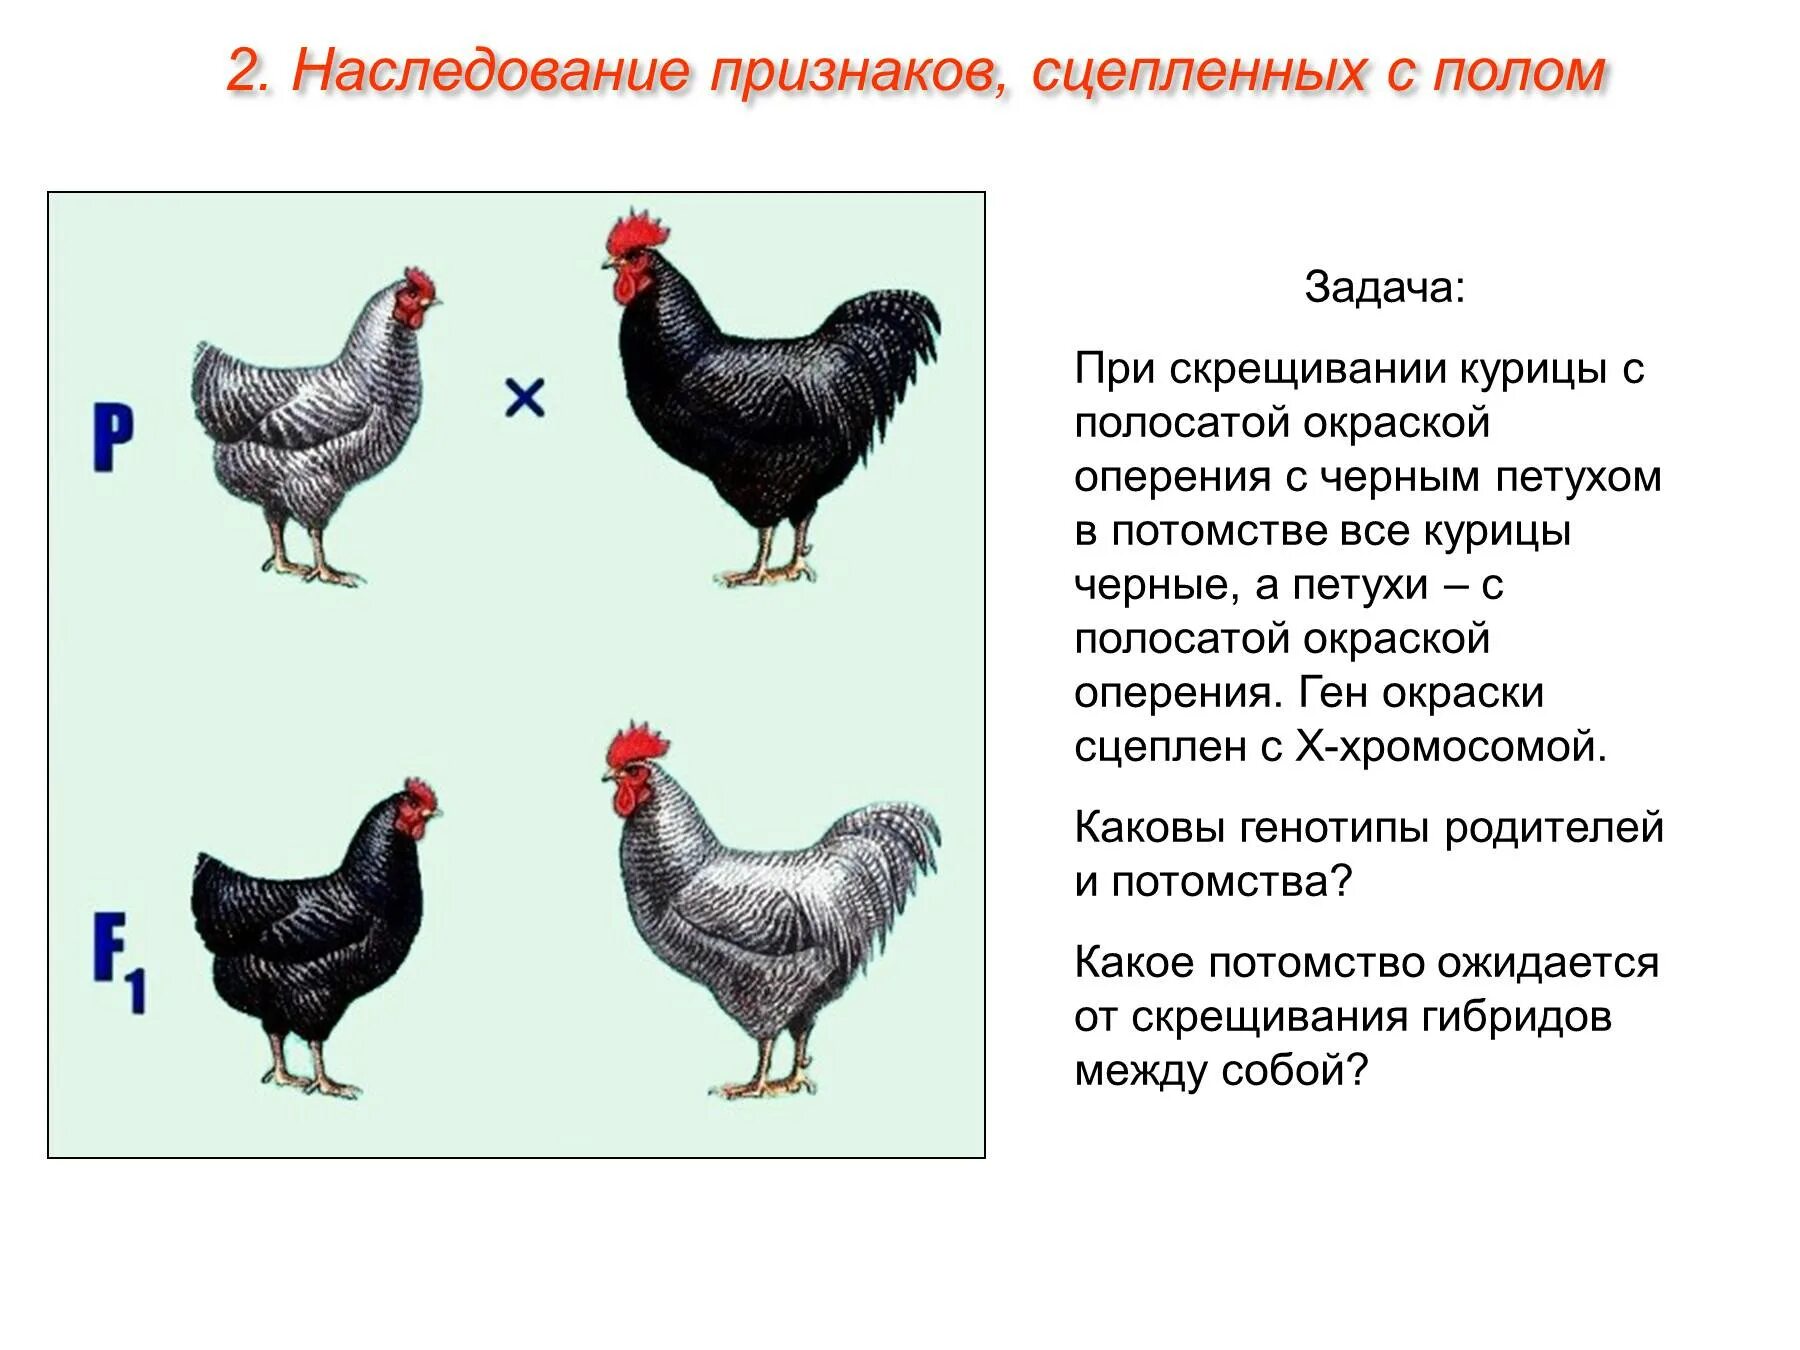 Доминантные признаки у кур. Наследование признаков сцепленных с полом. Задачи сцепленные с полом. Генотип курицы. Скрещивание кур.